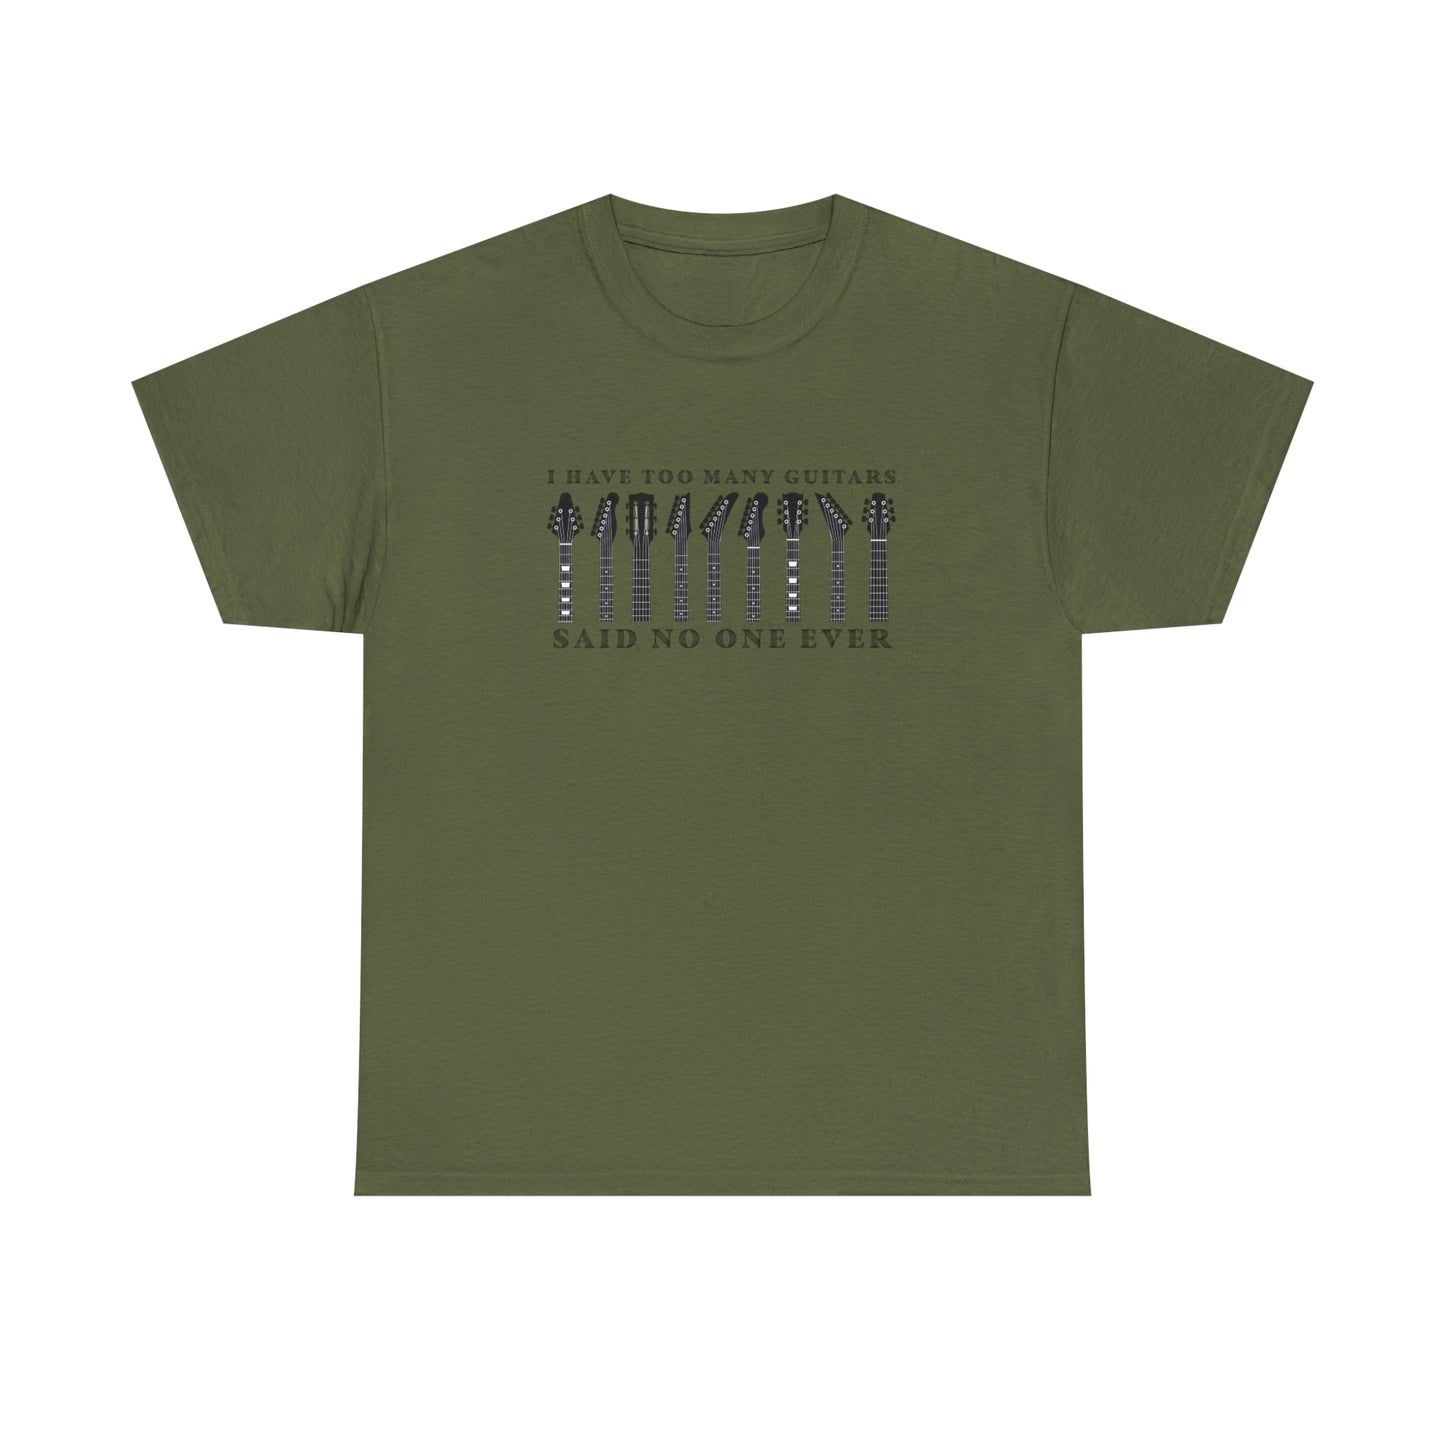 Guitar Player T-Shirt For Guitarist T Shirt For Musician TShirt Sarcastic Guitar Shirt For Musician Gift For Guitar Collector T Shirt